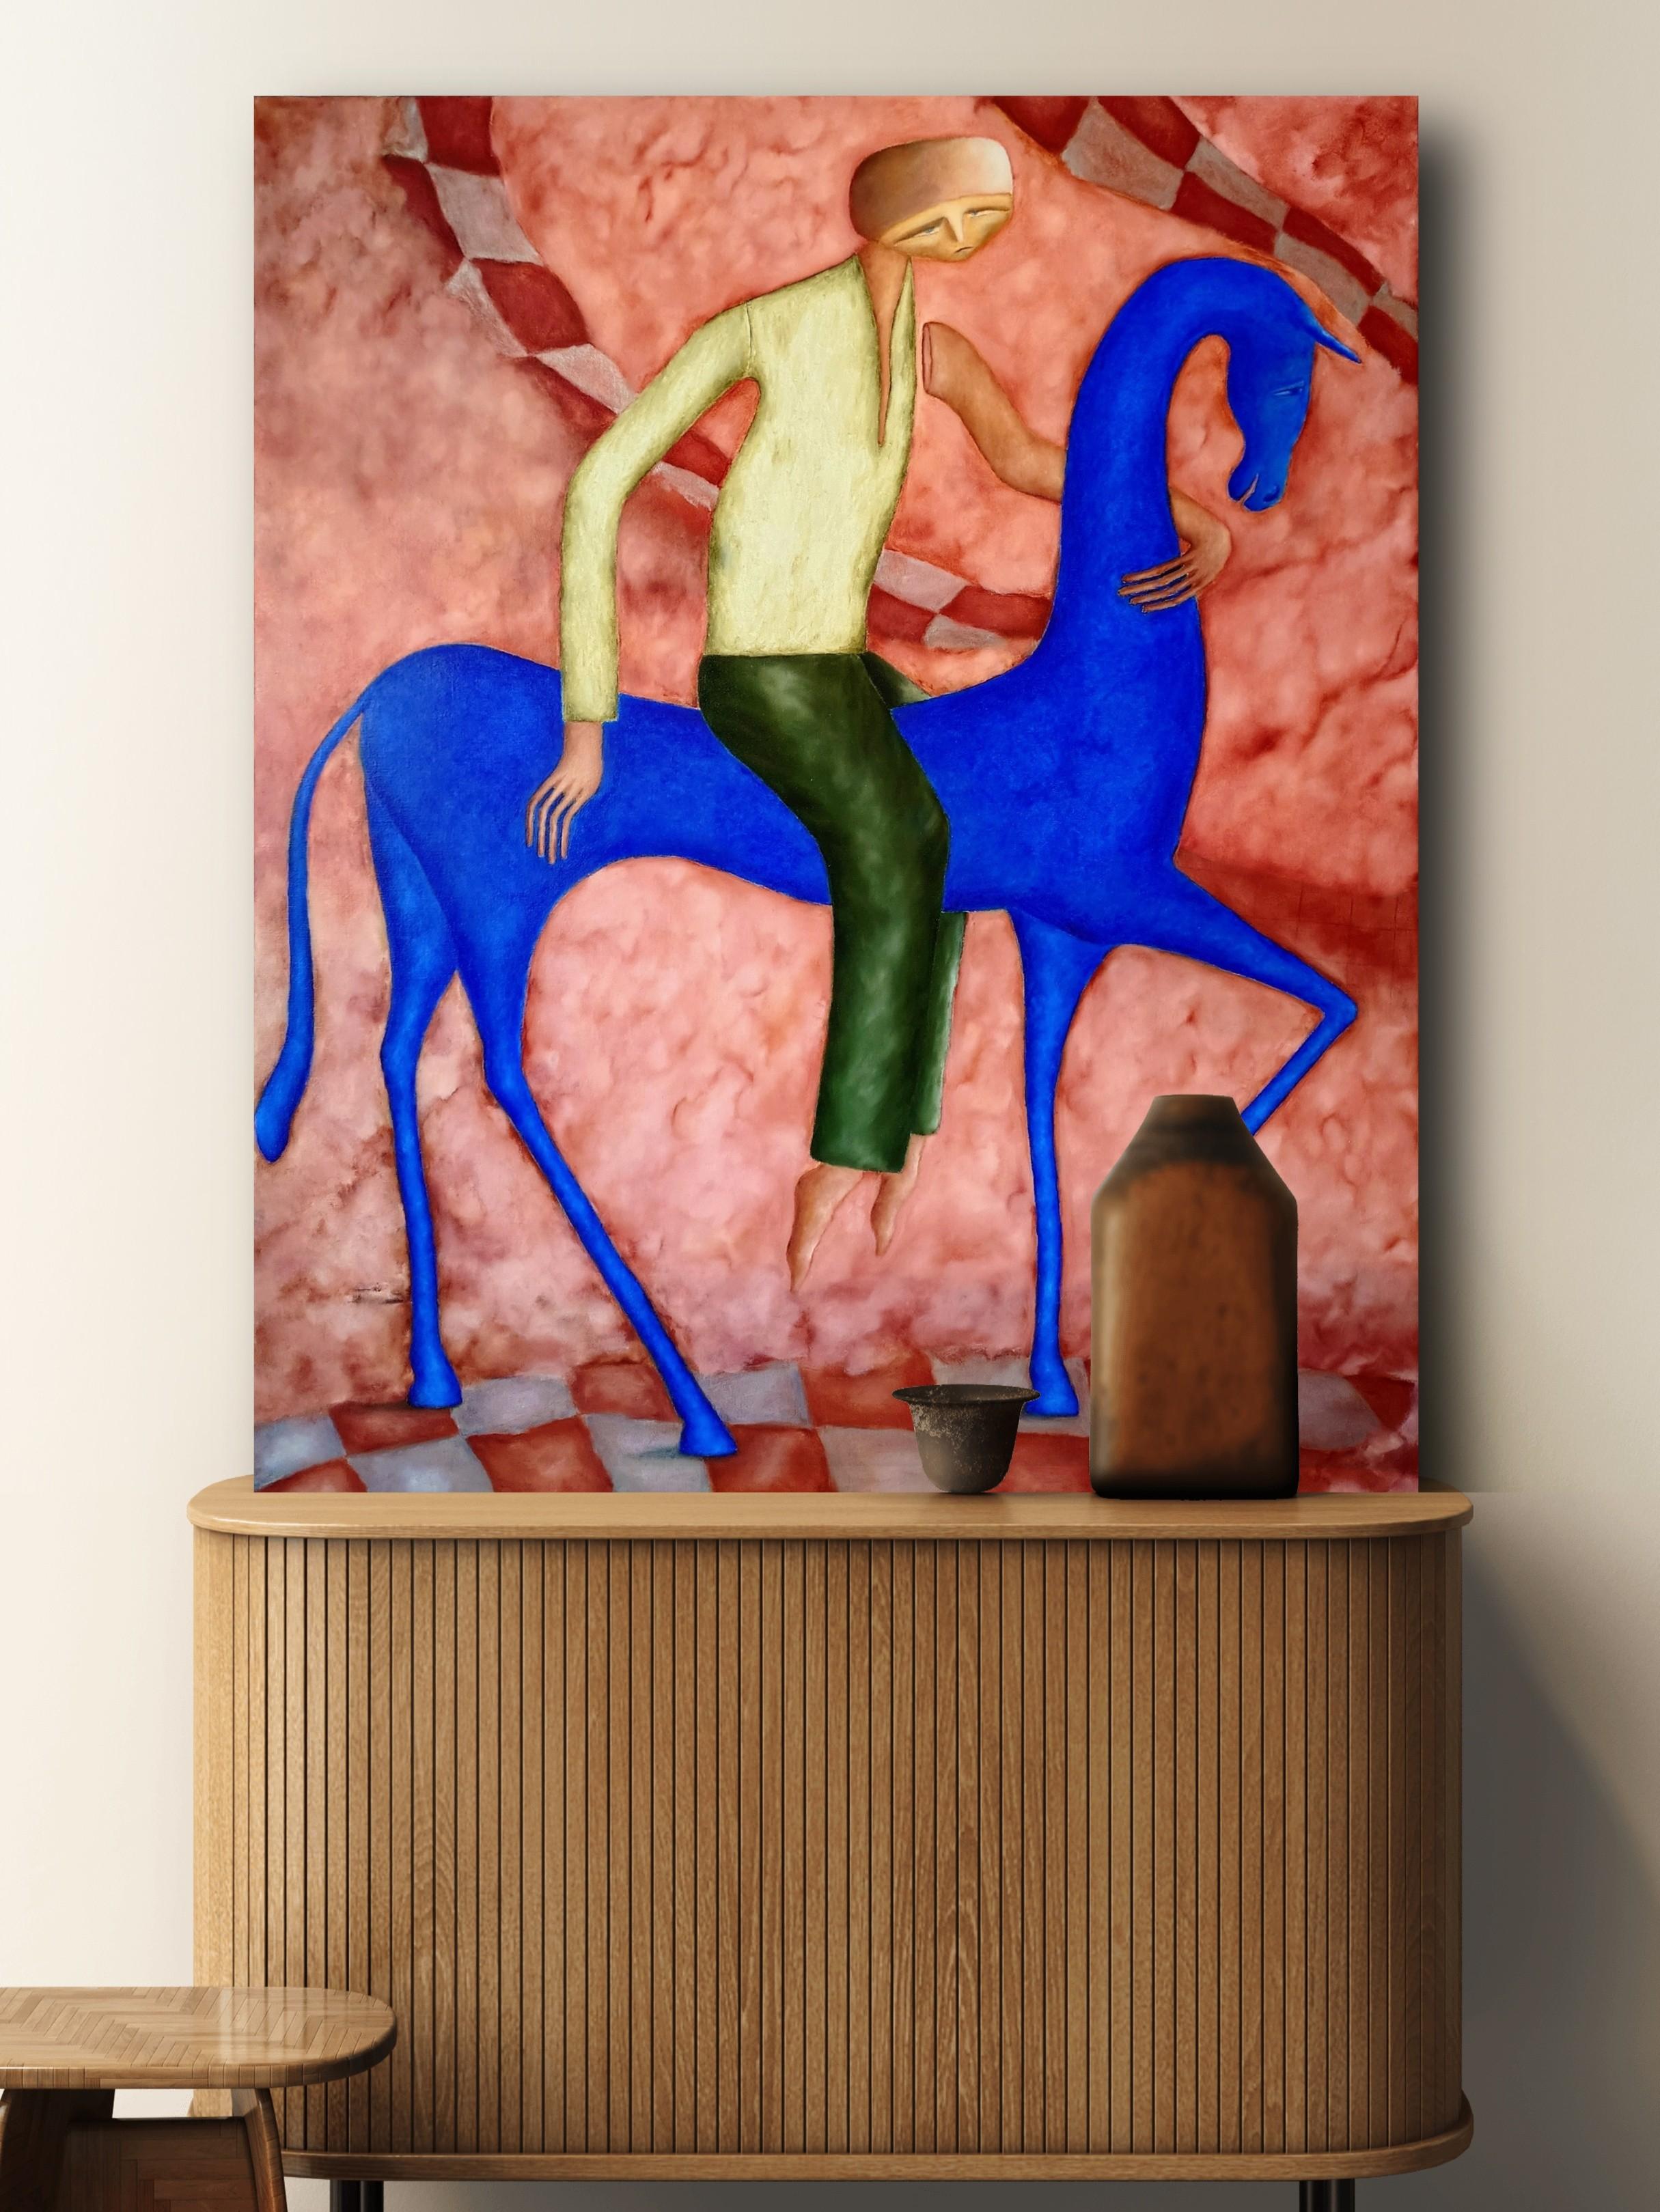 Viajero a caballo - Pintura figurativa al óleo sobre lienzo, 2023
La obra está en un marco de madera con soporte. Listo para colgar.

Tam Ess realiza pinturas al óleo que exploran el subconsciente, mezclando el surrealismo figurativo con